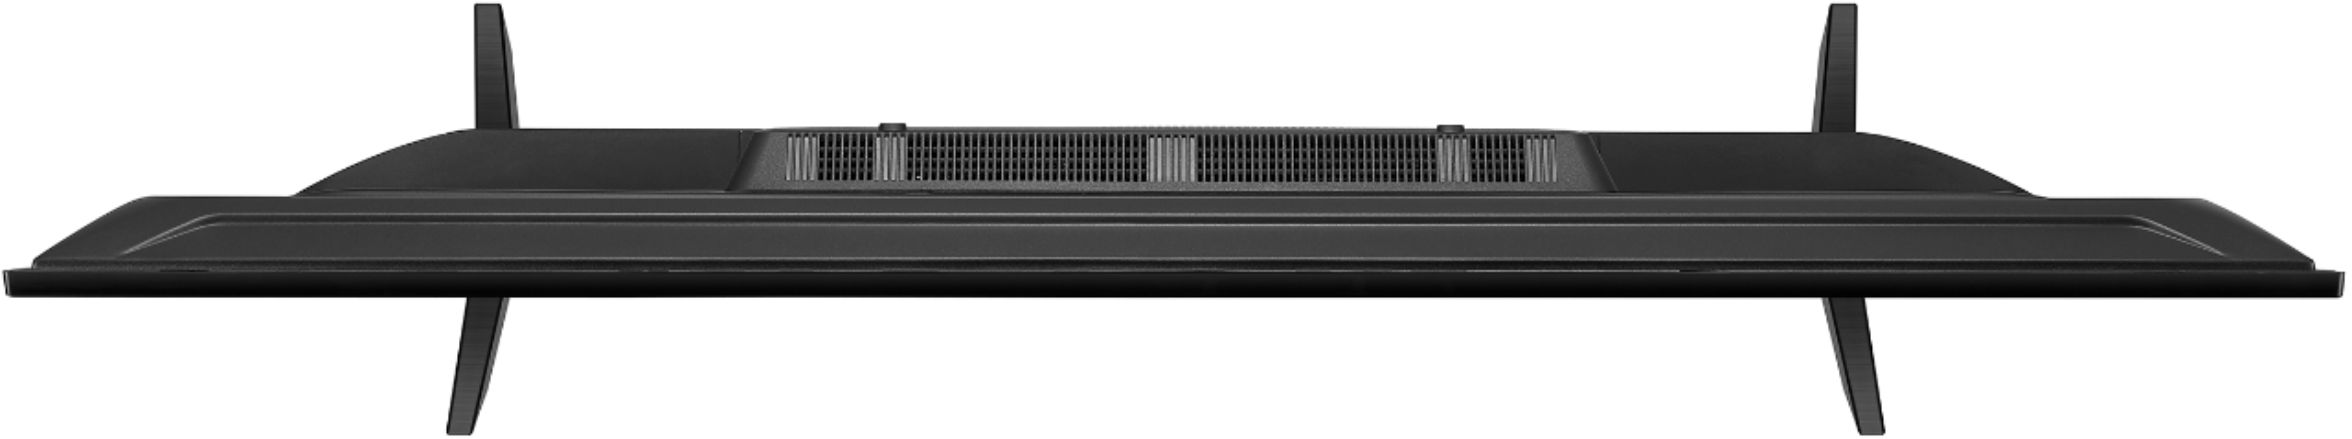 Best Buy: LG 55 Class UN7000 Series LED 4K UHD Smart webOS TV 55UN7000PUB